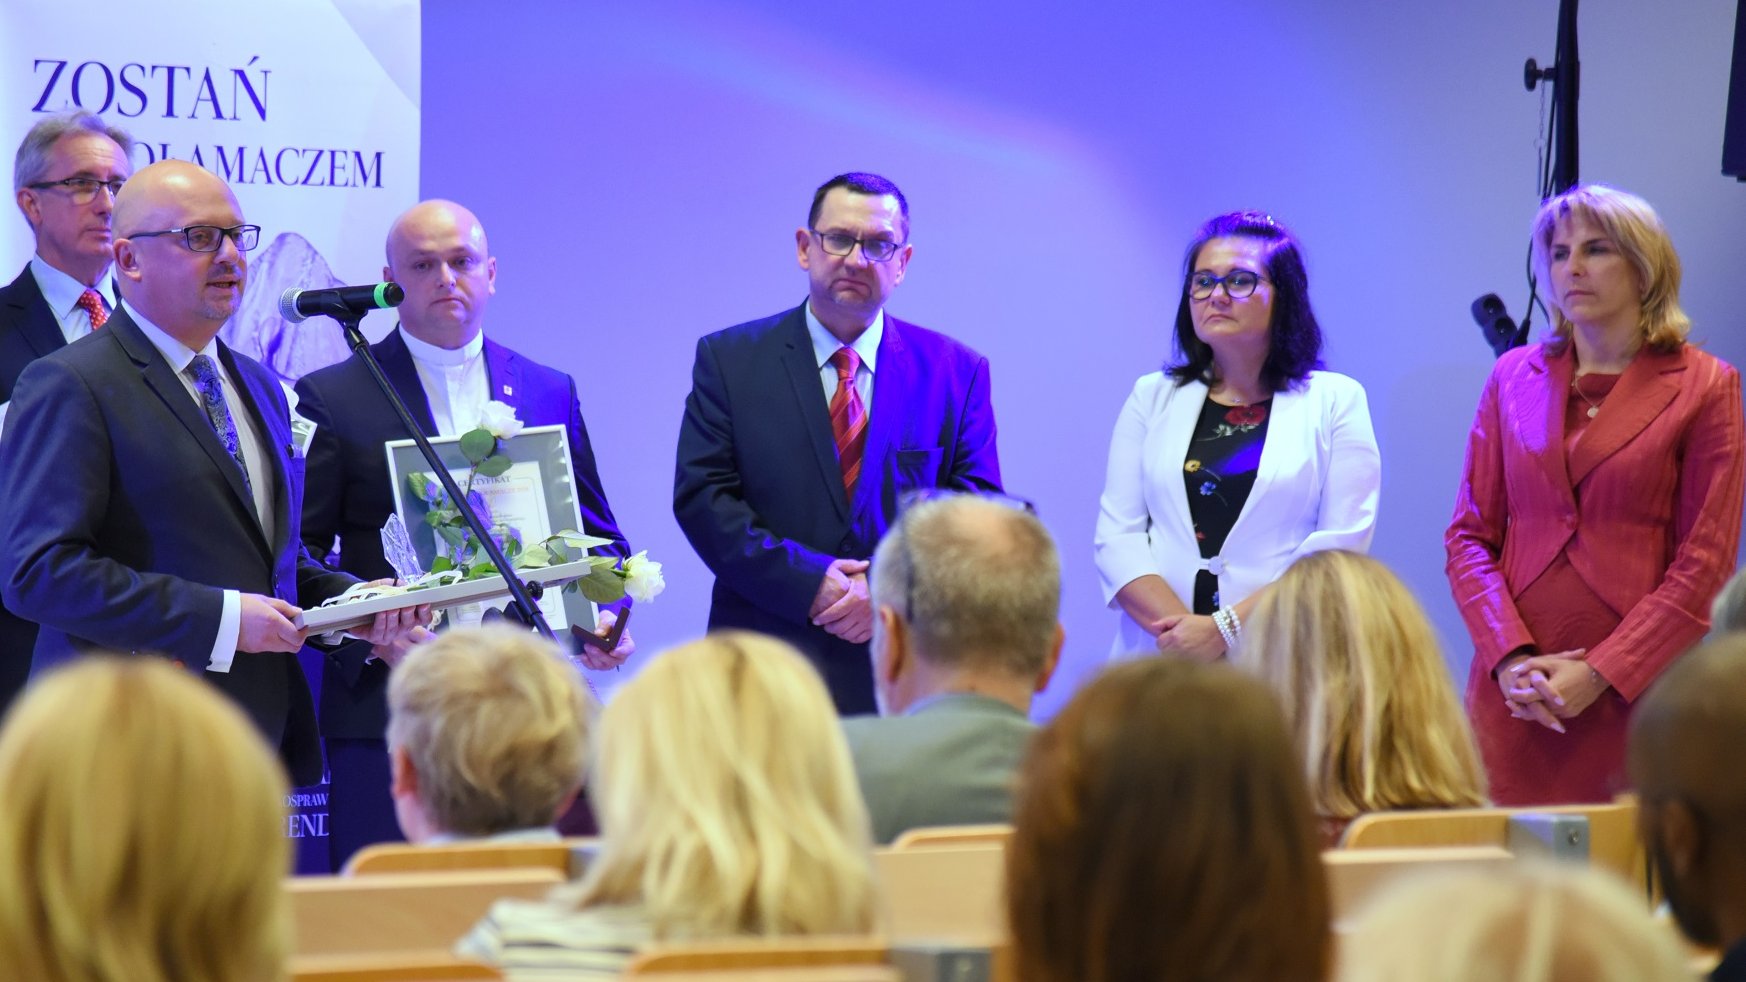 W kategorii "Instytucja" nagrodzono Miejskie Centrum Medyczne im. dr. K. Jonschera w Łodzi